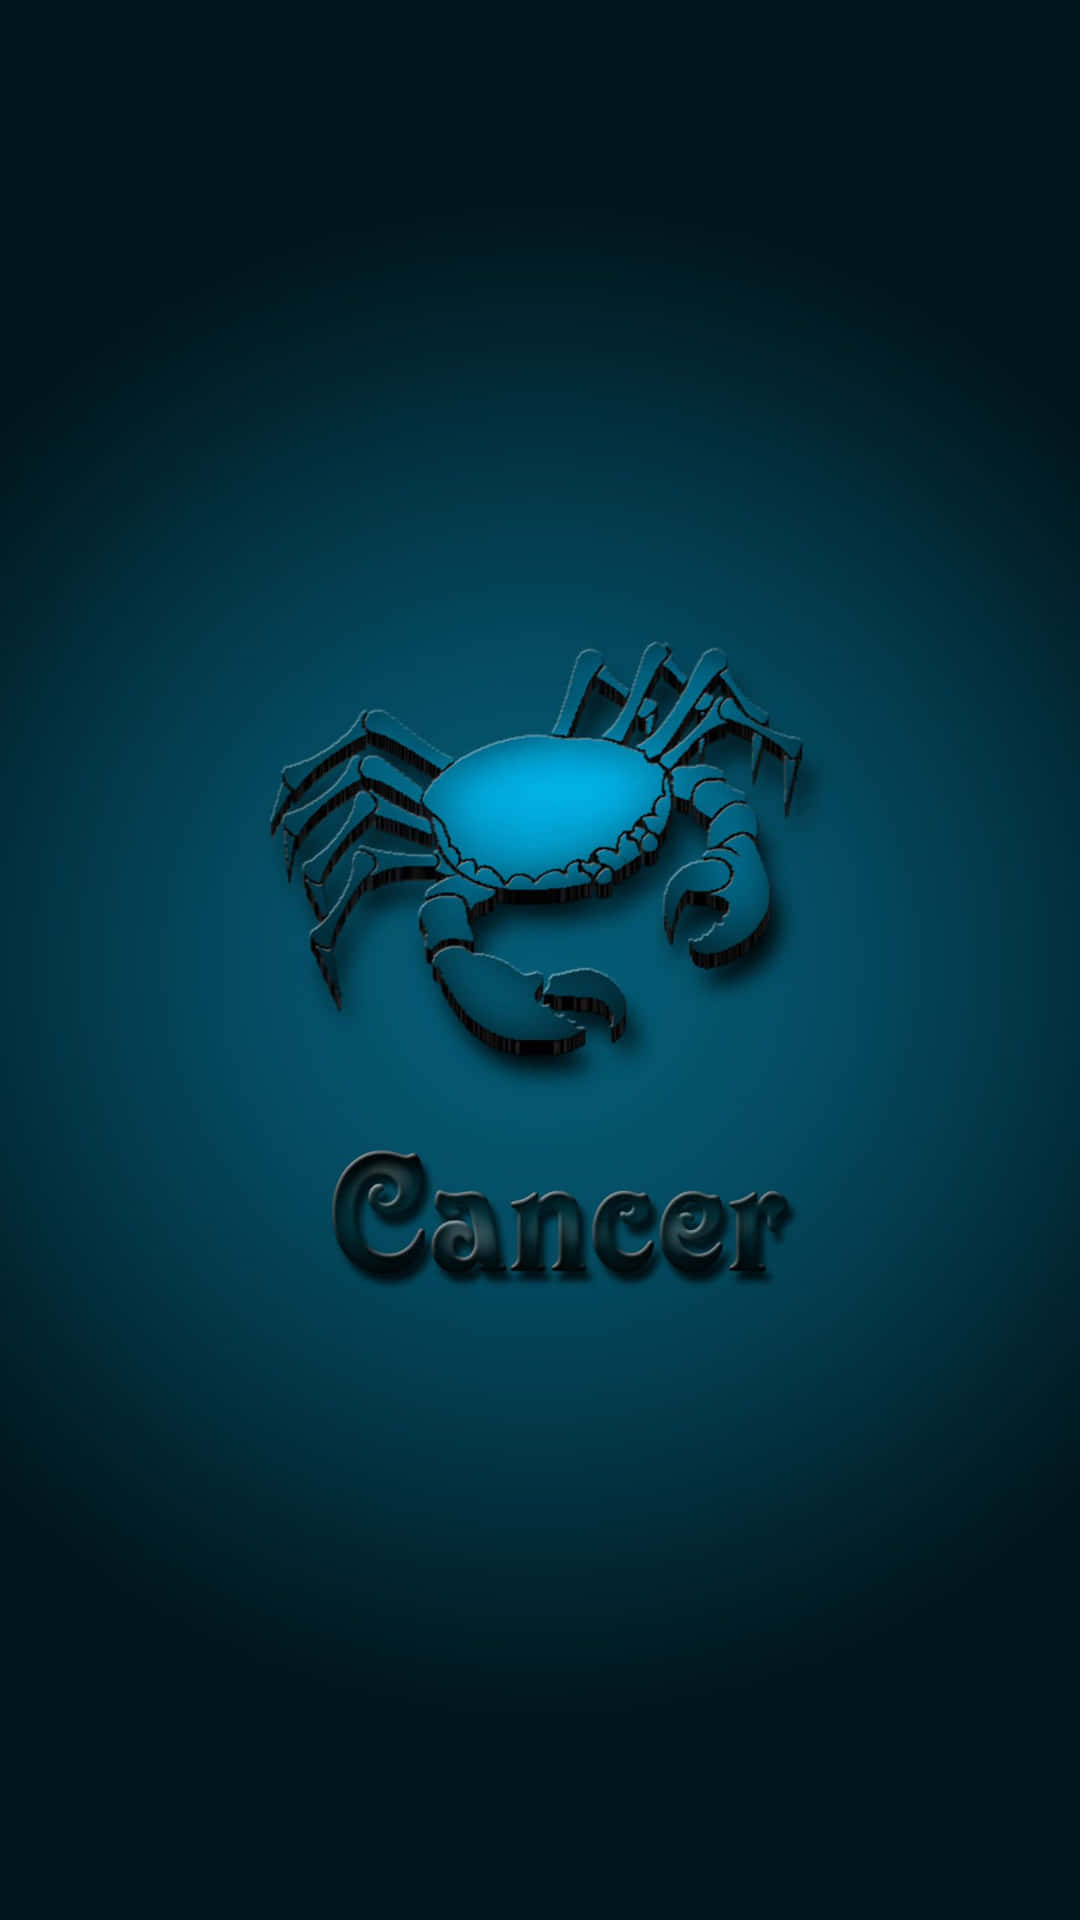 Krebssternzeichen - Eine Blaue Krabbe Auf Einem Dunklen Hintergrund.